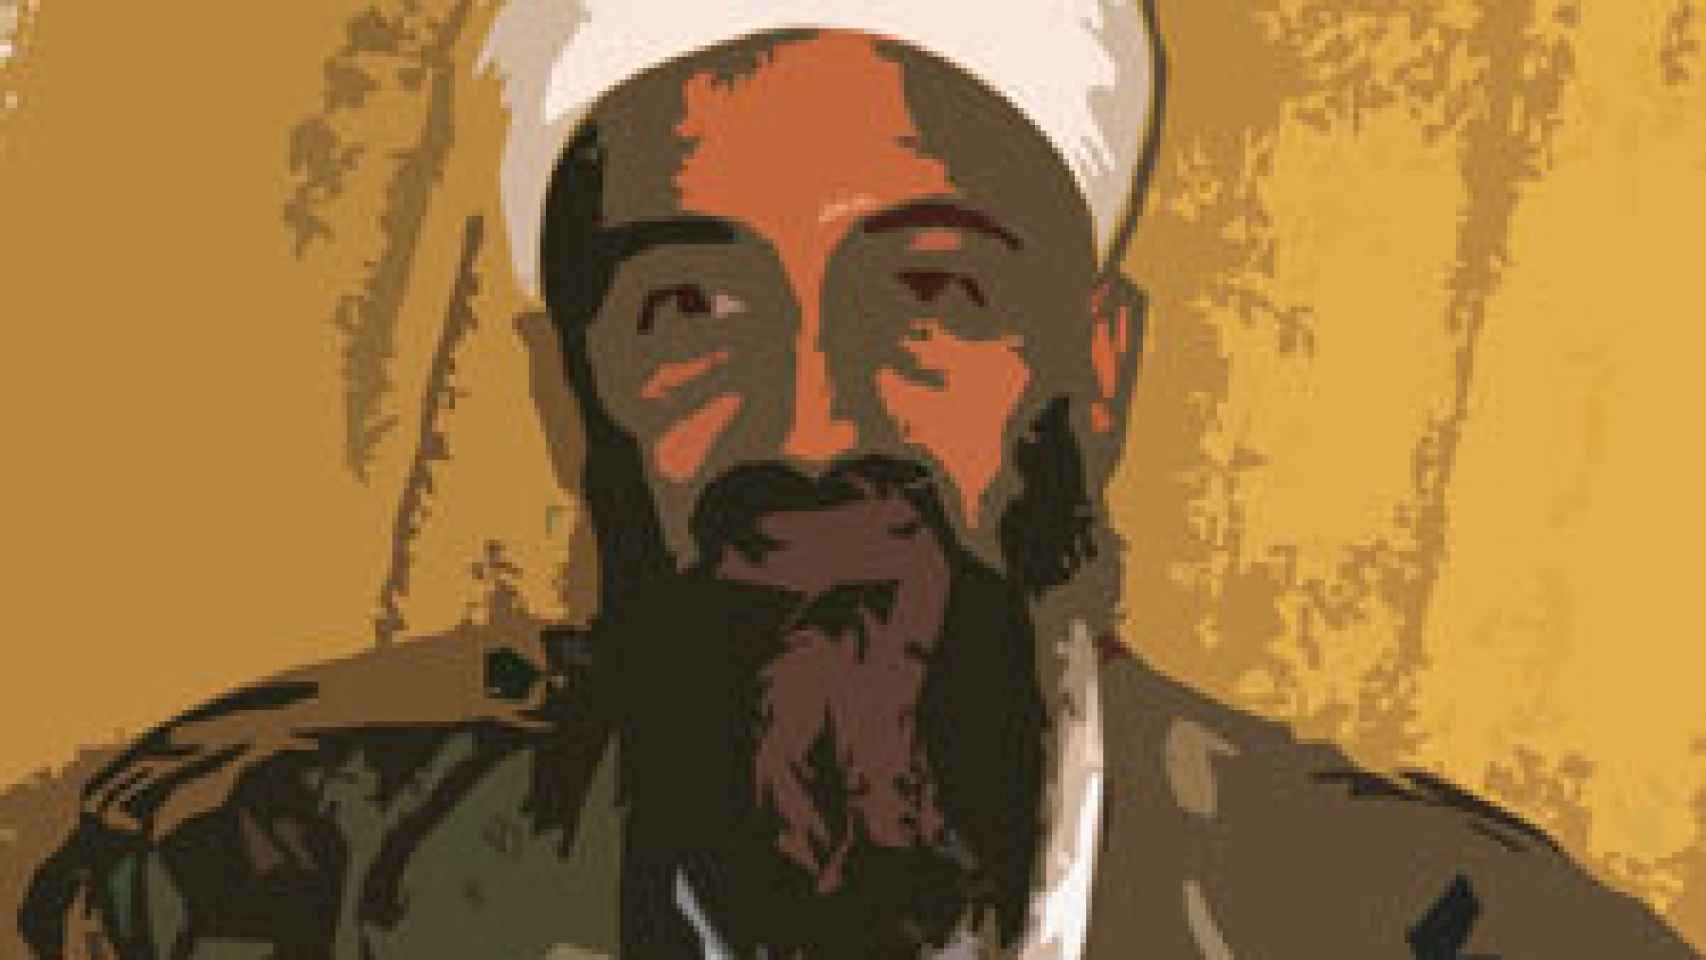 Image: Osama Bin Laden y Al Qaeda. El fin de una era